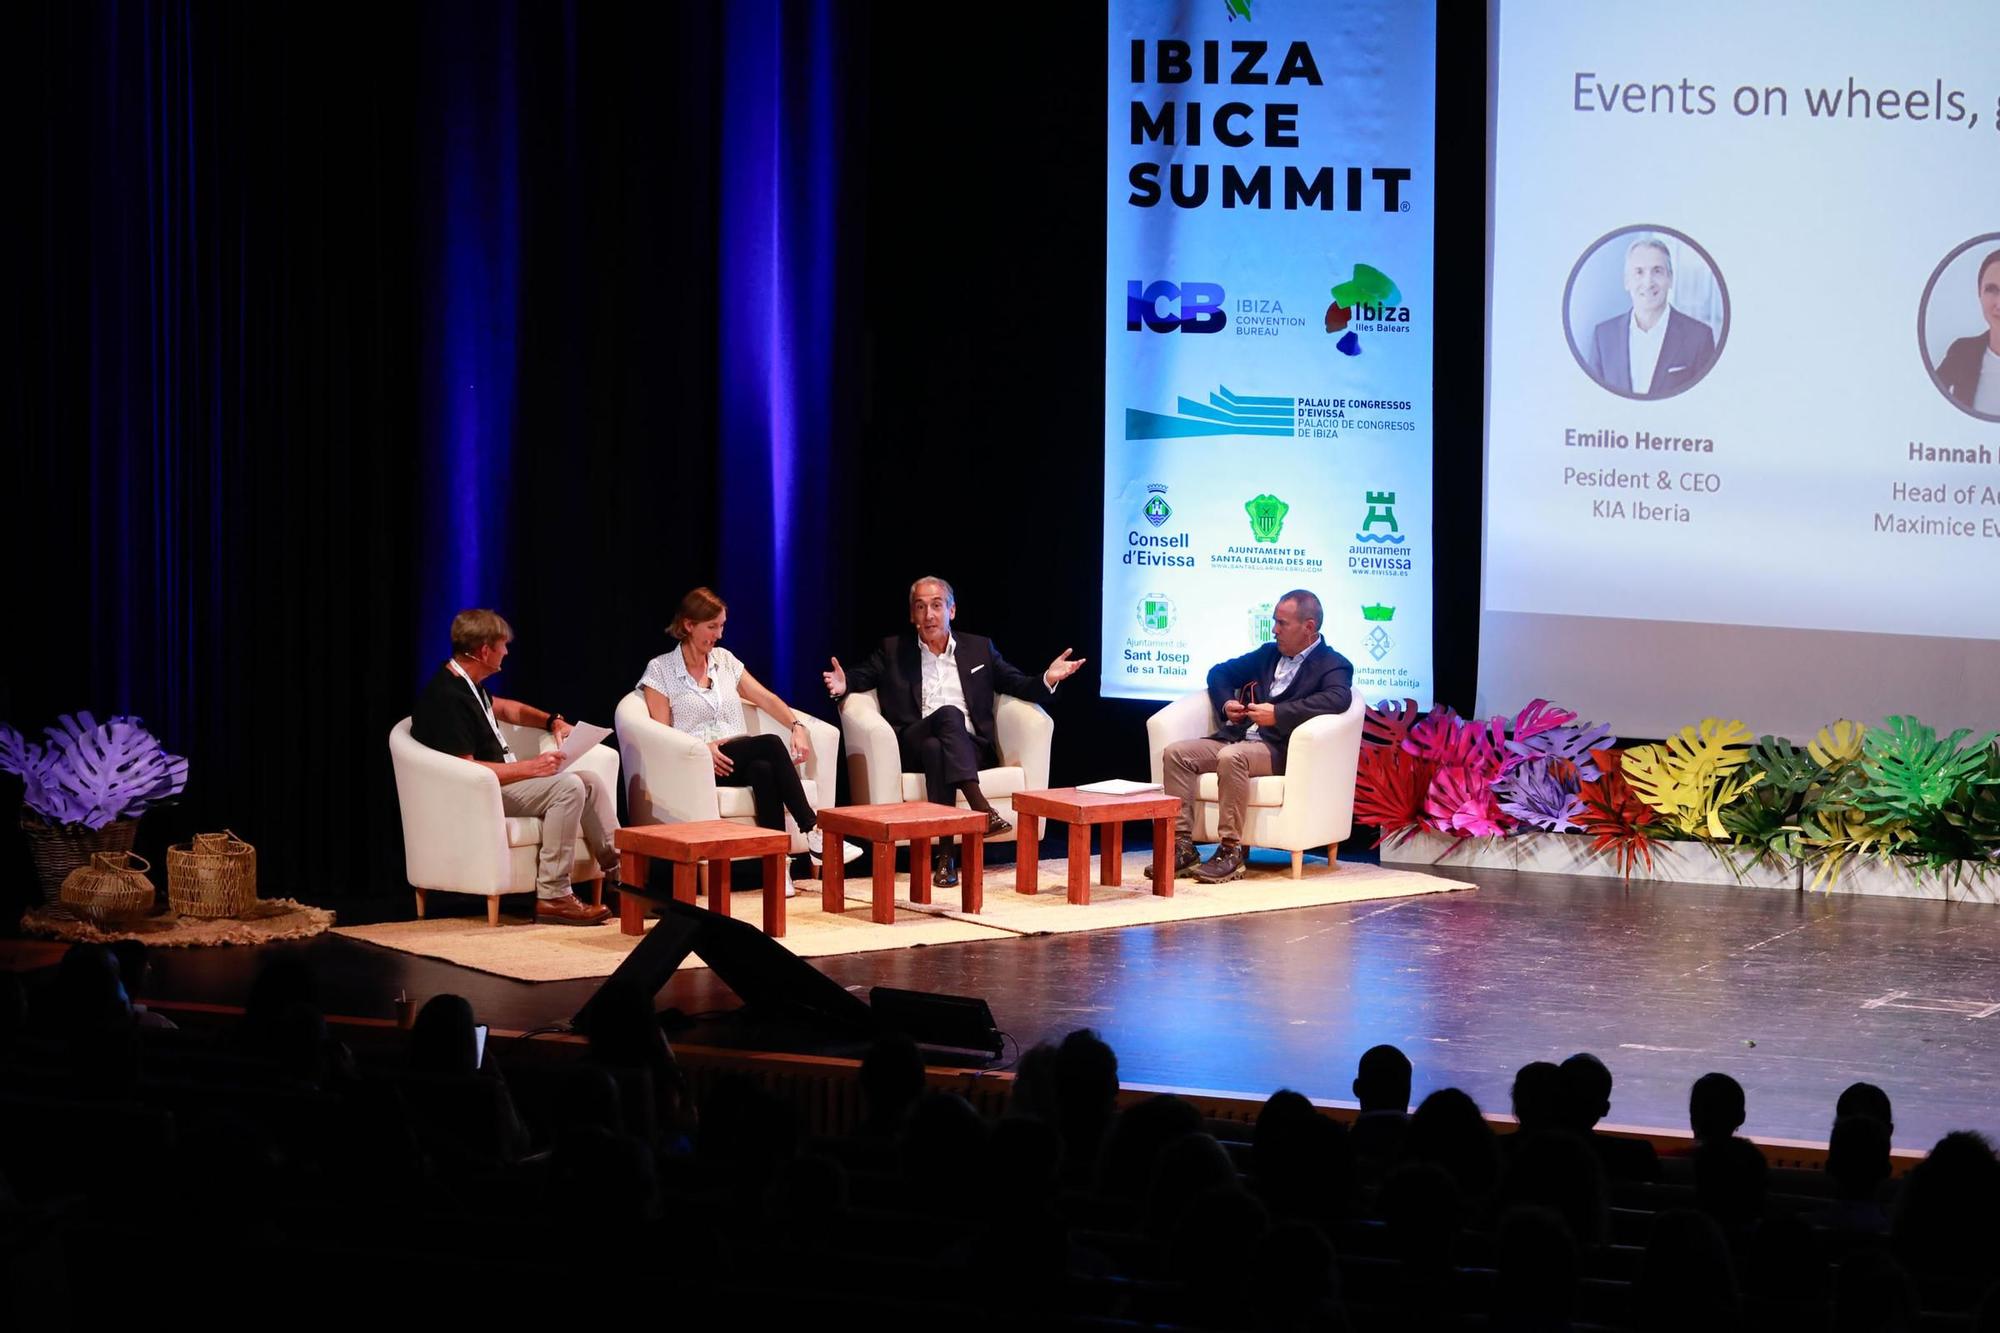 La celebración del Ibiza MICE Summit, en imágenes